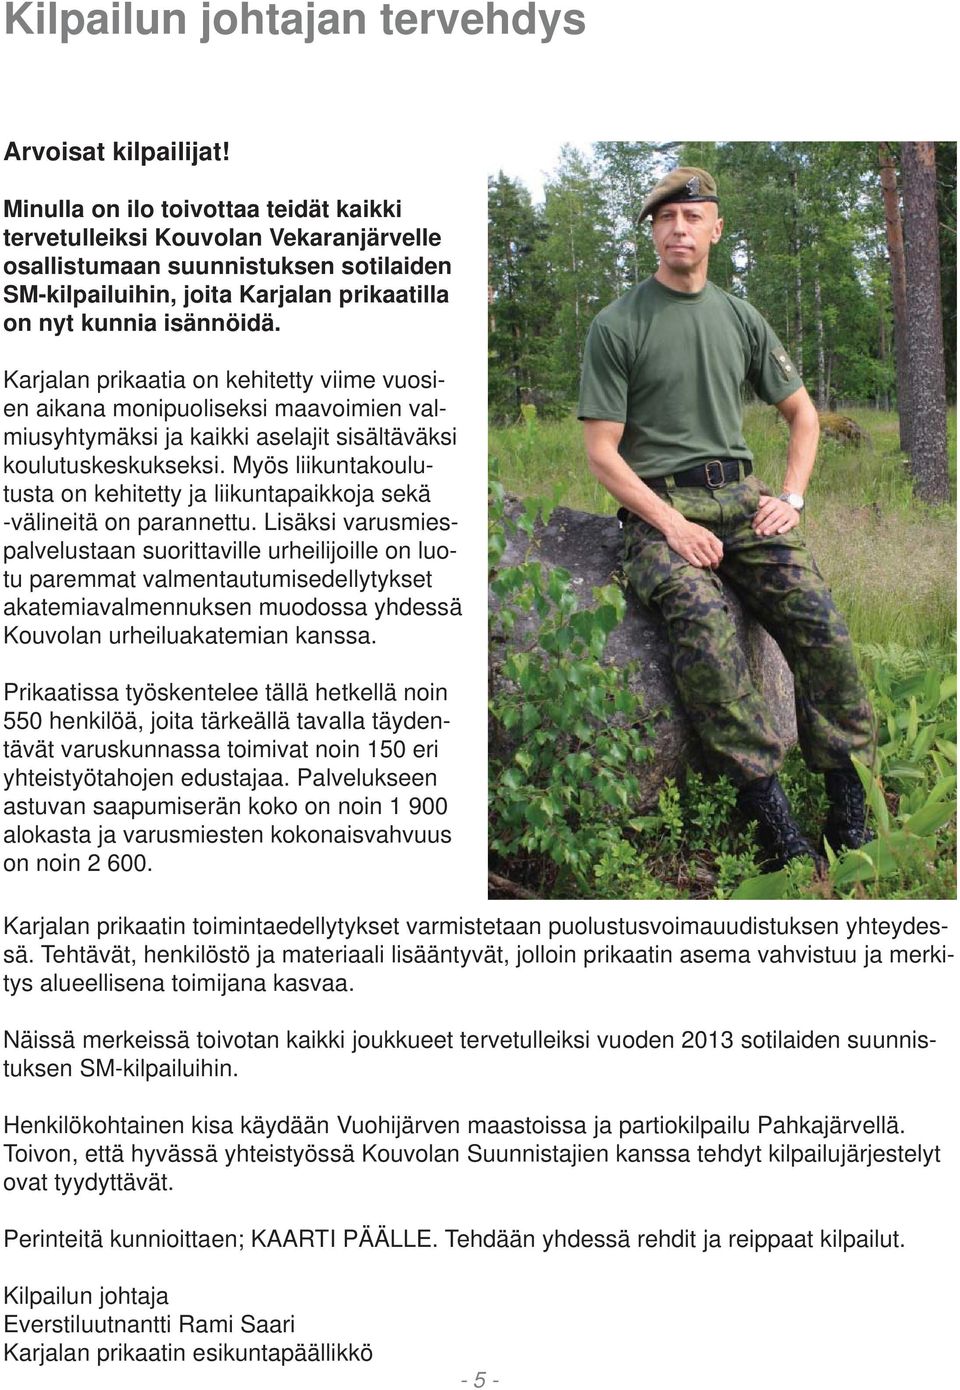 Karjalan prikaatia on kehitetty viime vuosien aikana monipuoliseksi maavoimien valmiusyhtymäksi ja kaikki aselajit sisältäväksi koulutuskeskukseksi.